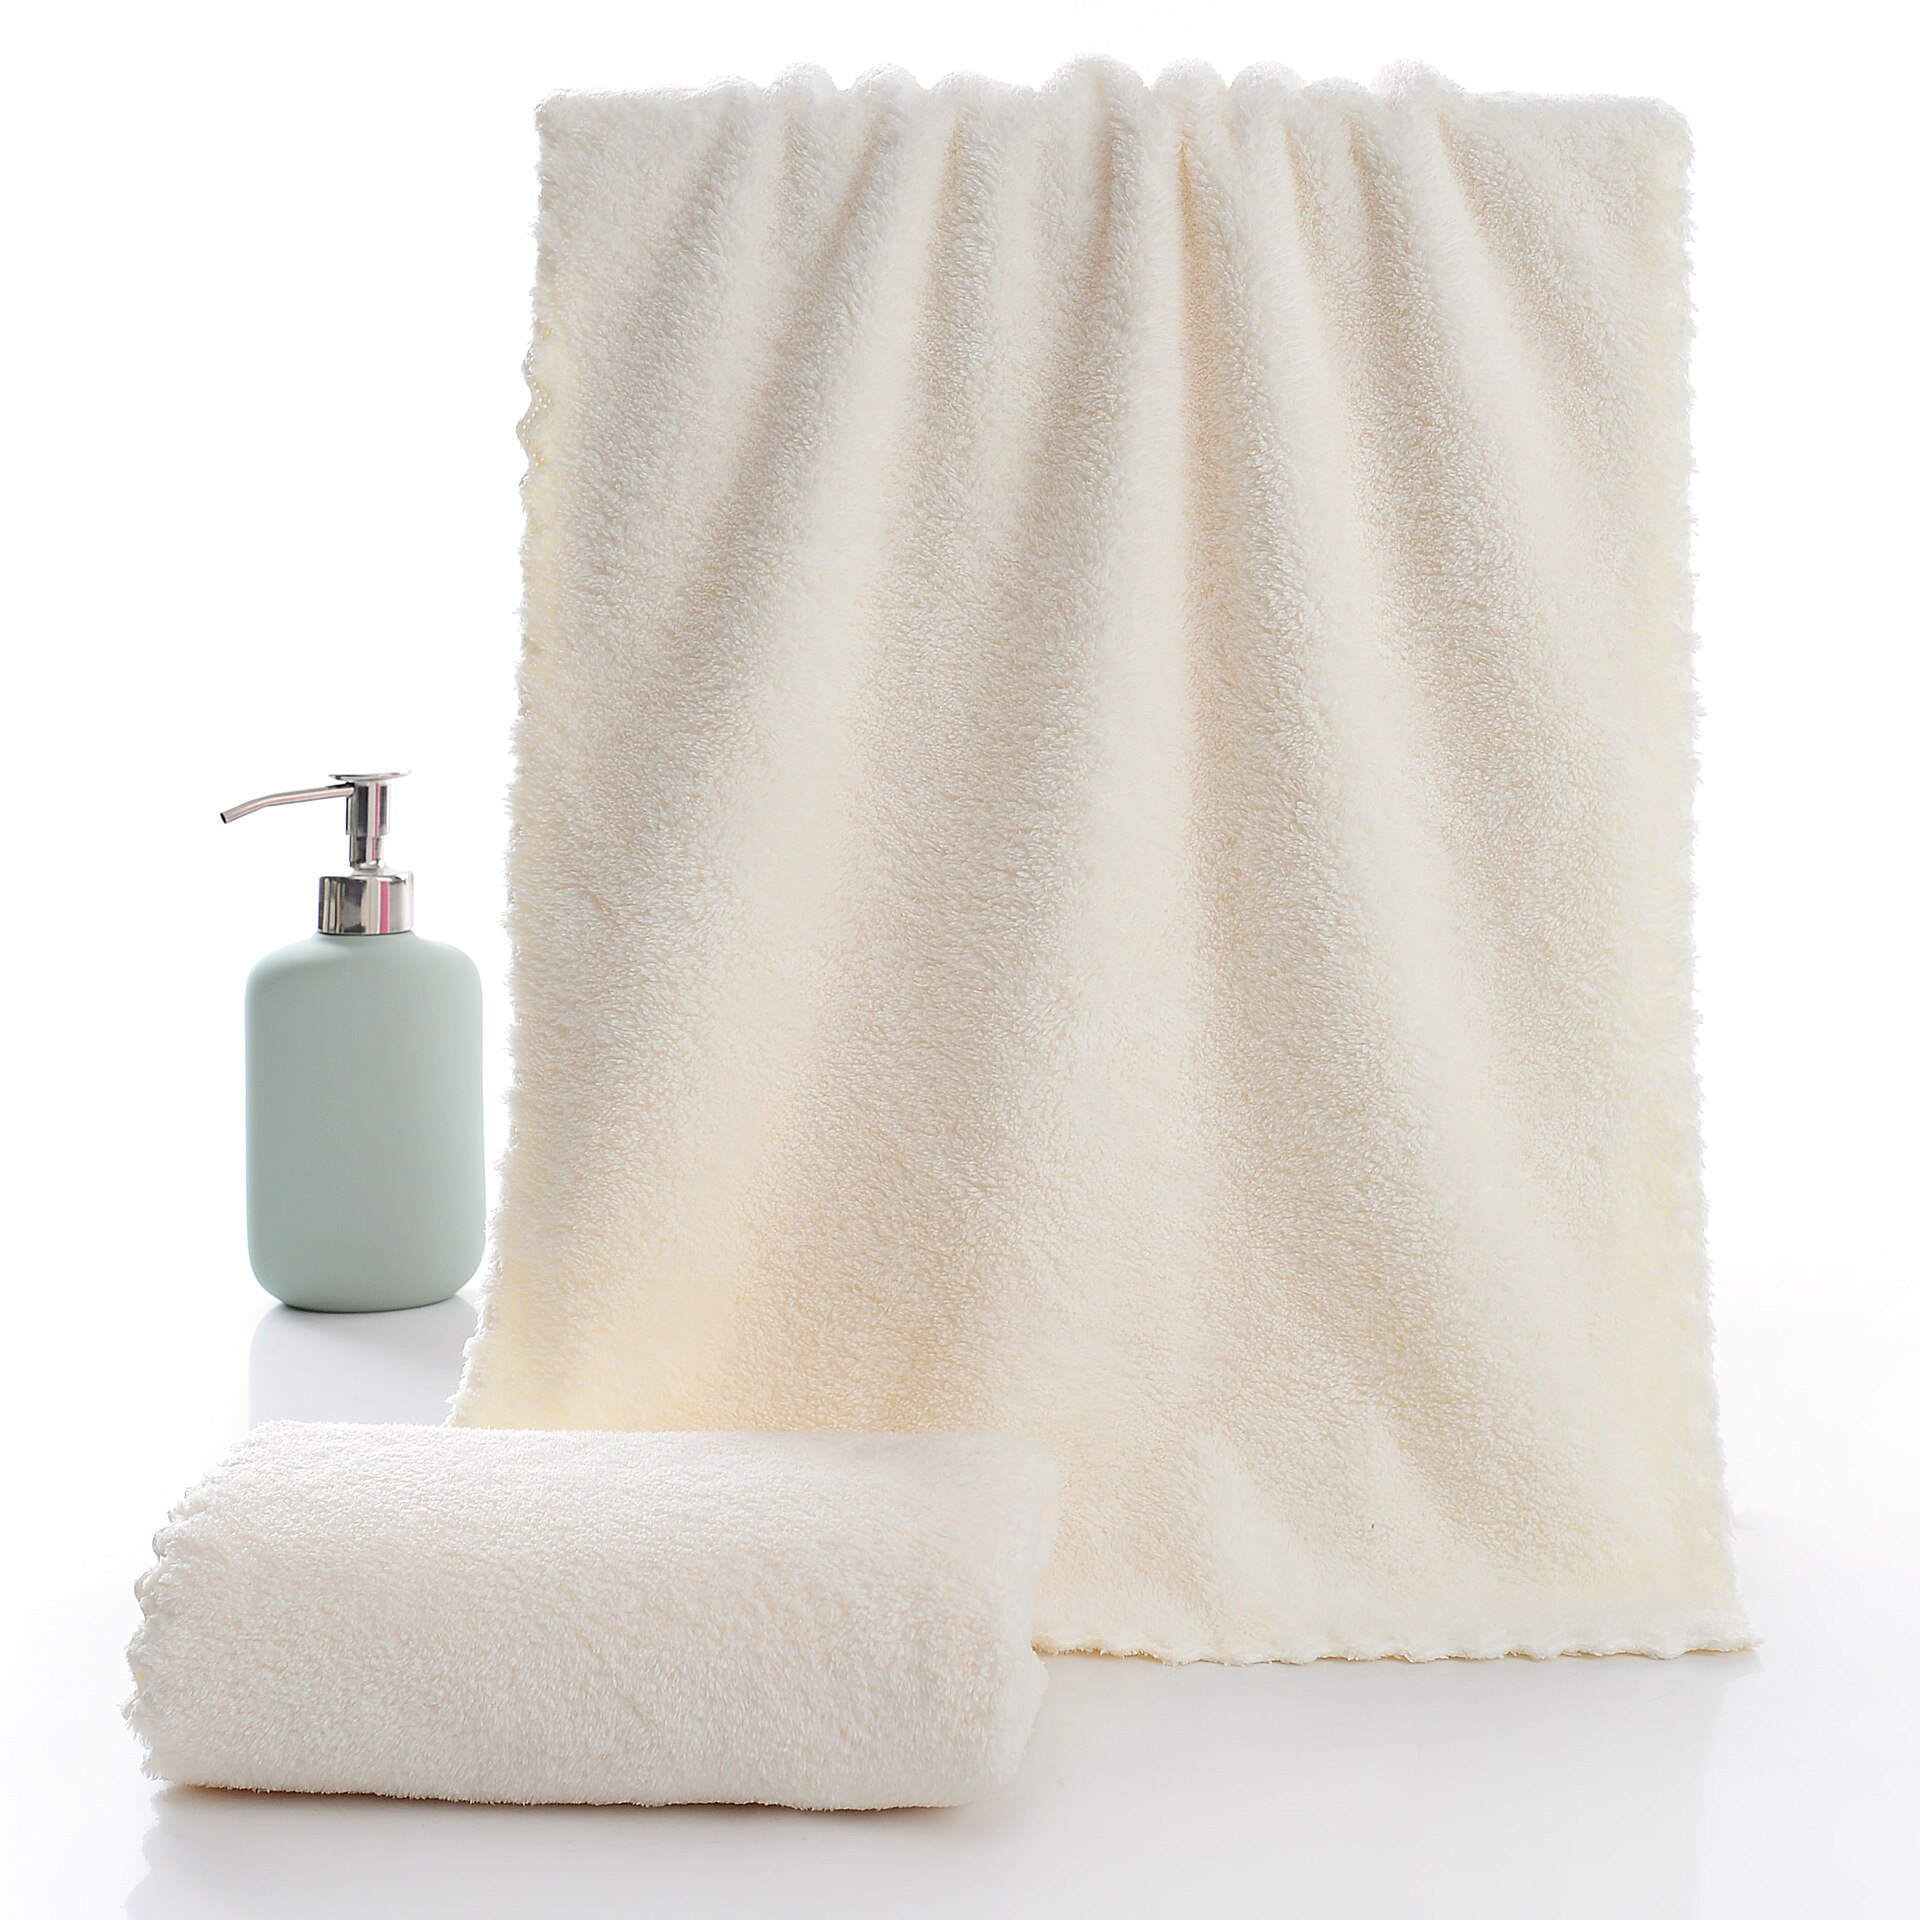 Giantex koral fløjl skåret kant håndklæde almindelig vask blød ansigt håndklæde til hjem polyester badehåndklæder til badeværelse: Hvid